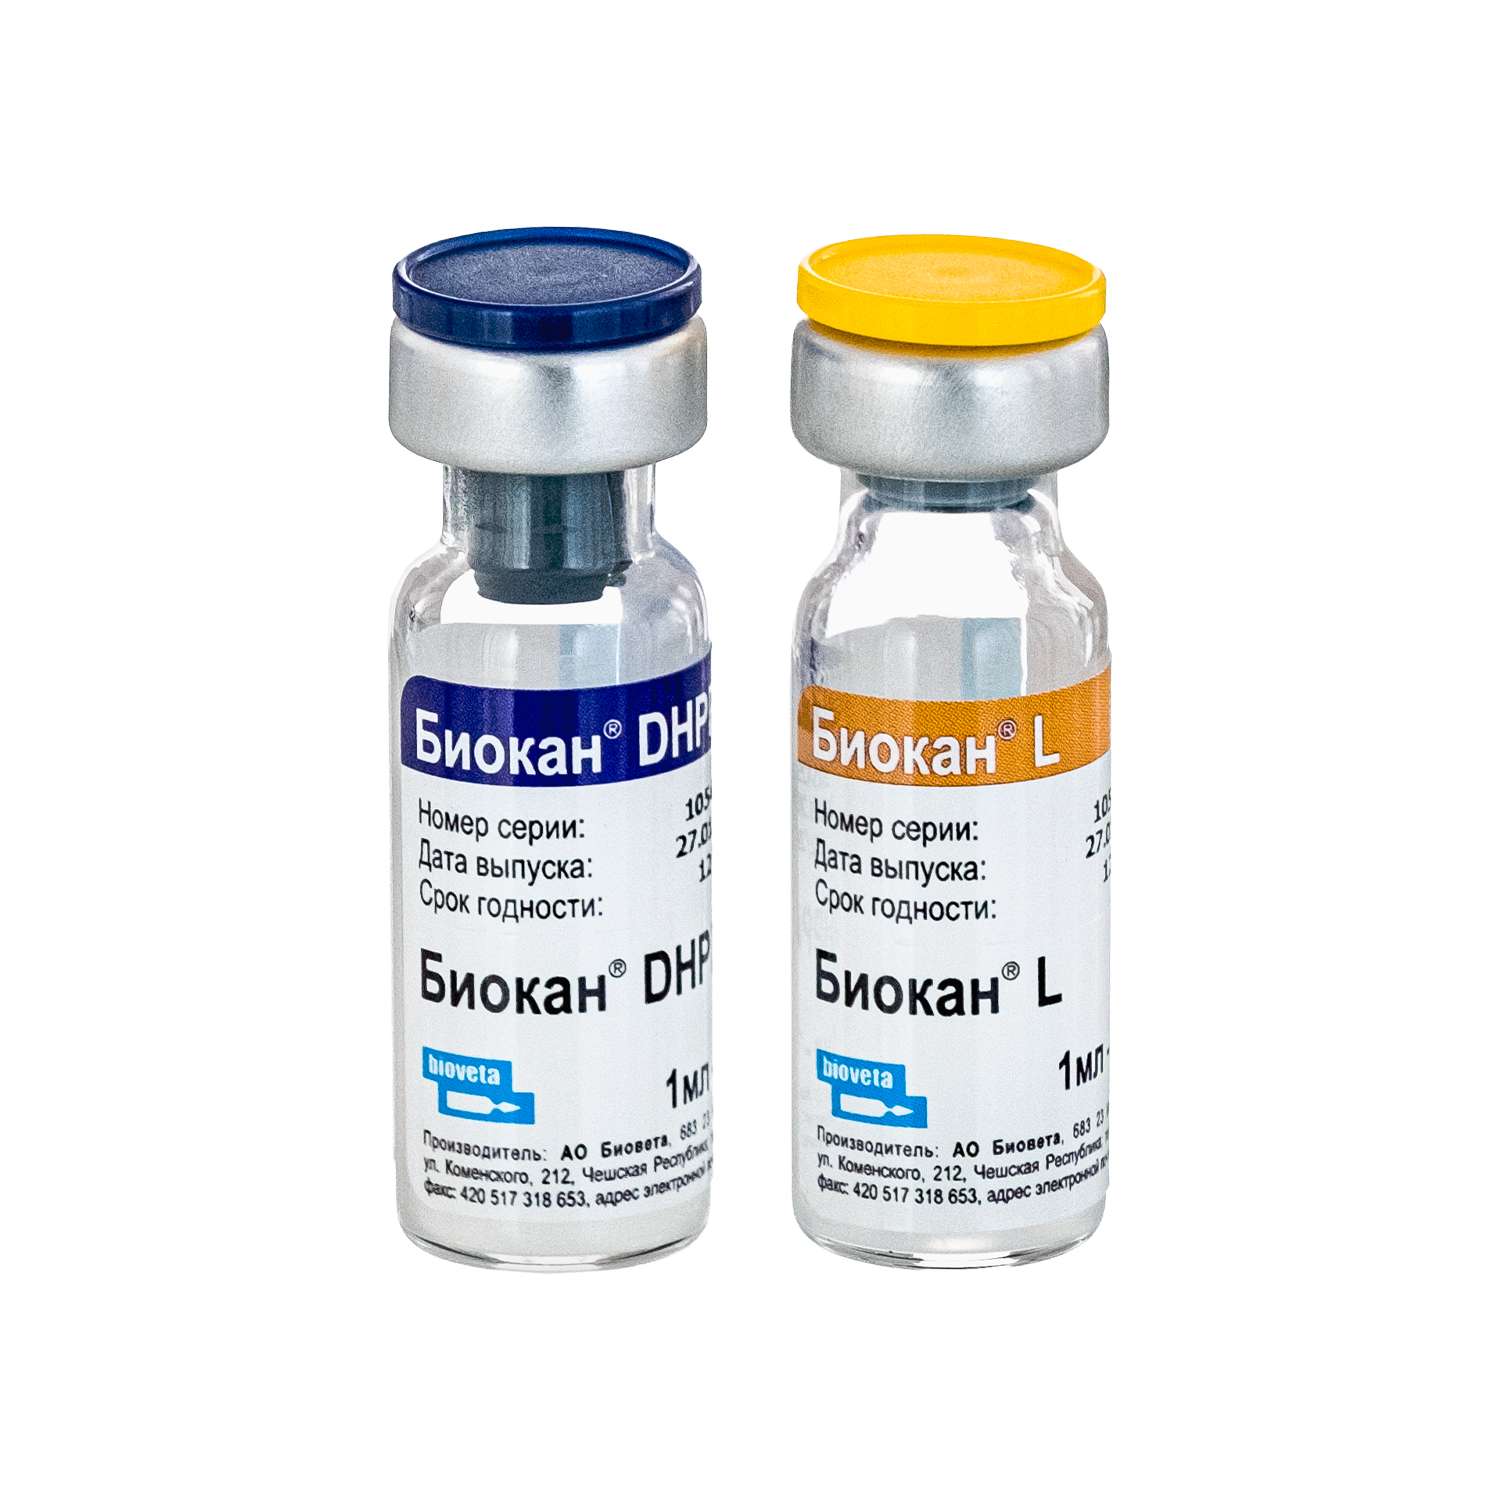 Вакцина биокан lr. Чешская вакцина для собак Биокан. Вакцина Биокан DHPPI+LR. Вакцина Чехия для собак Биокан.